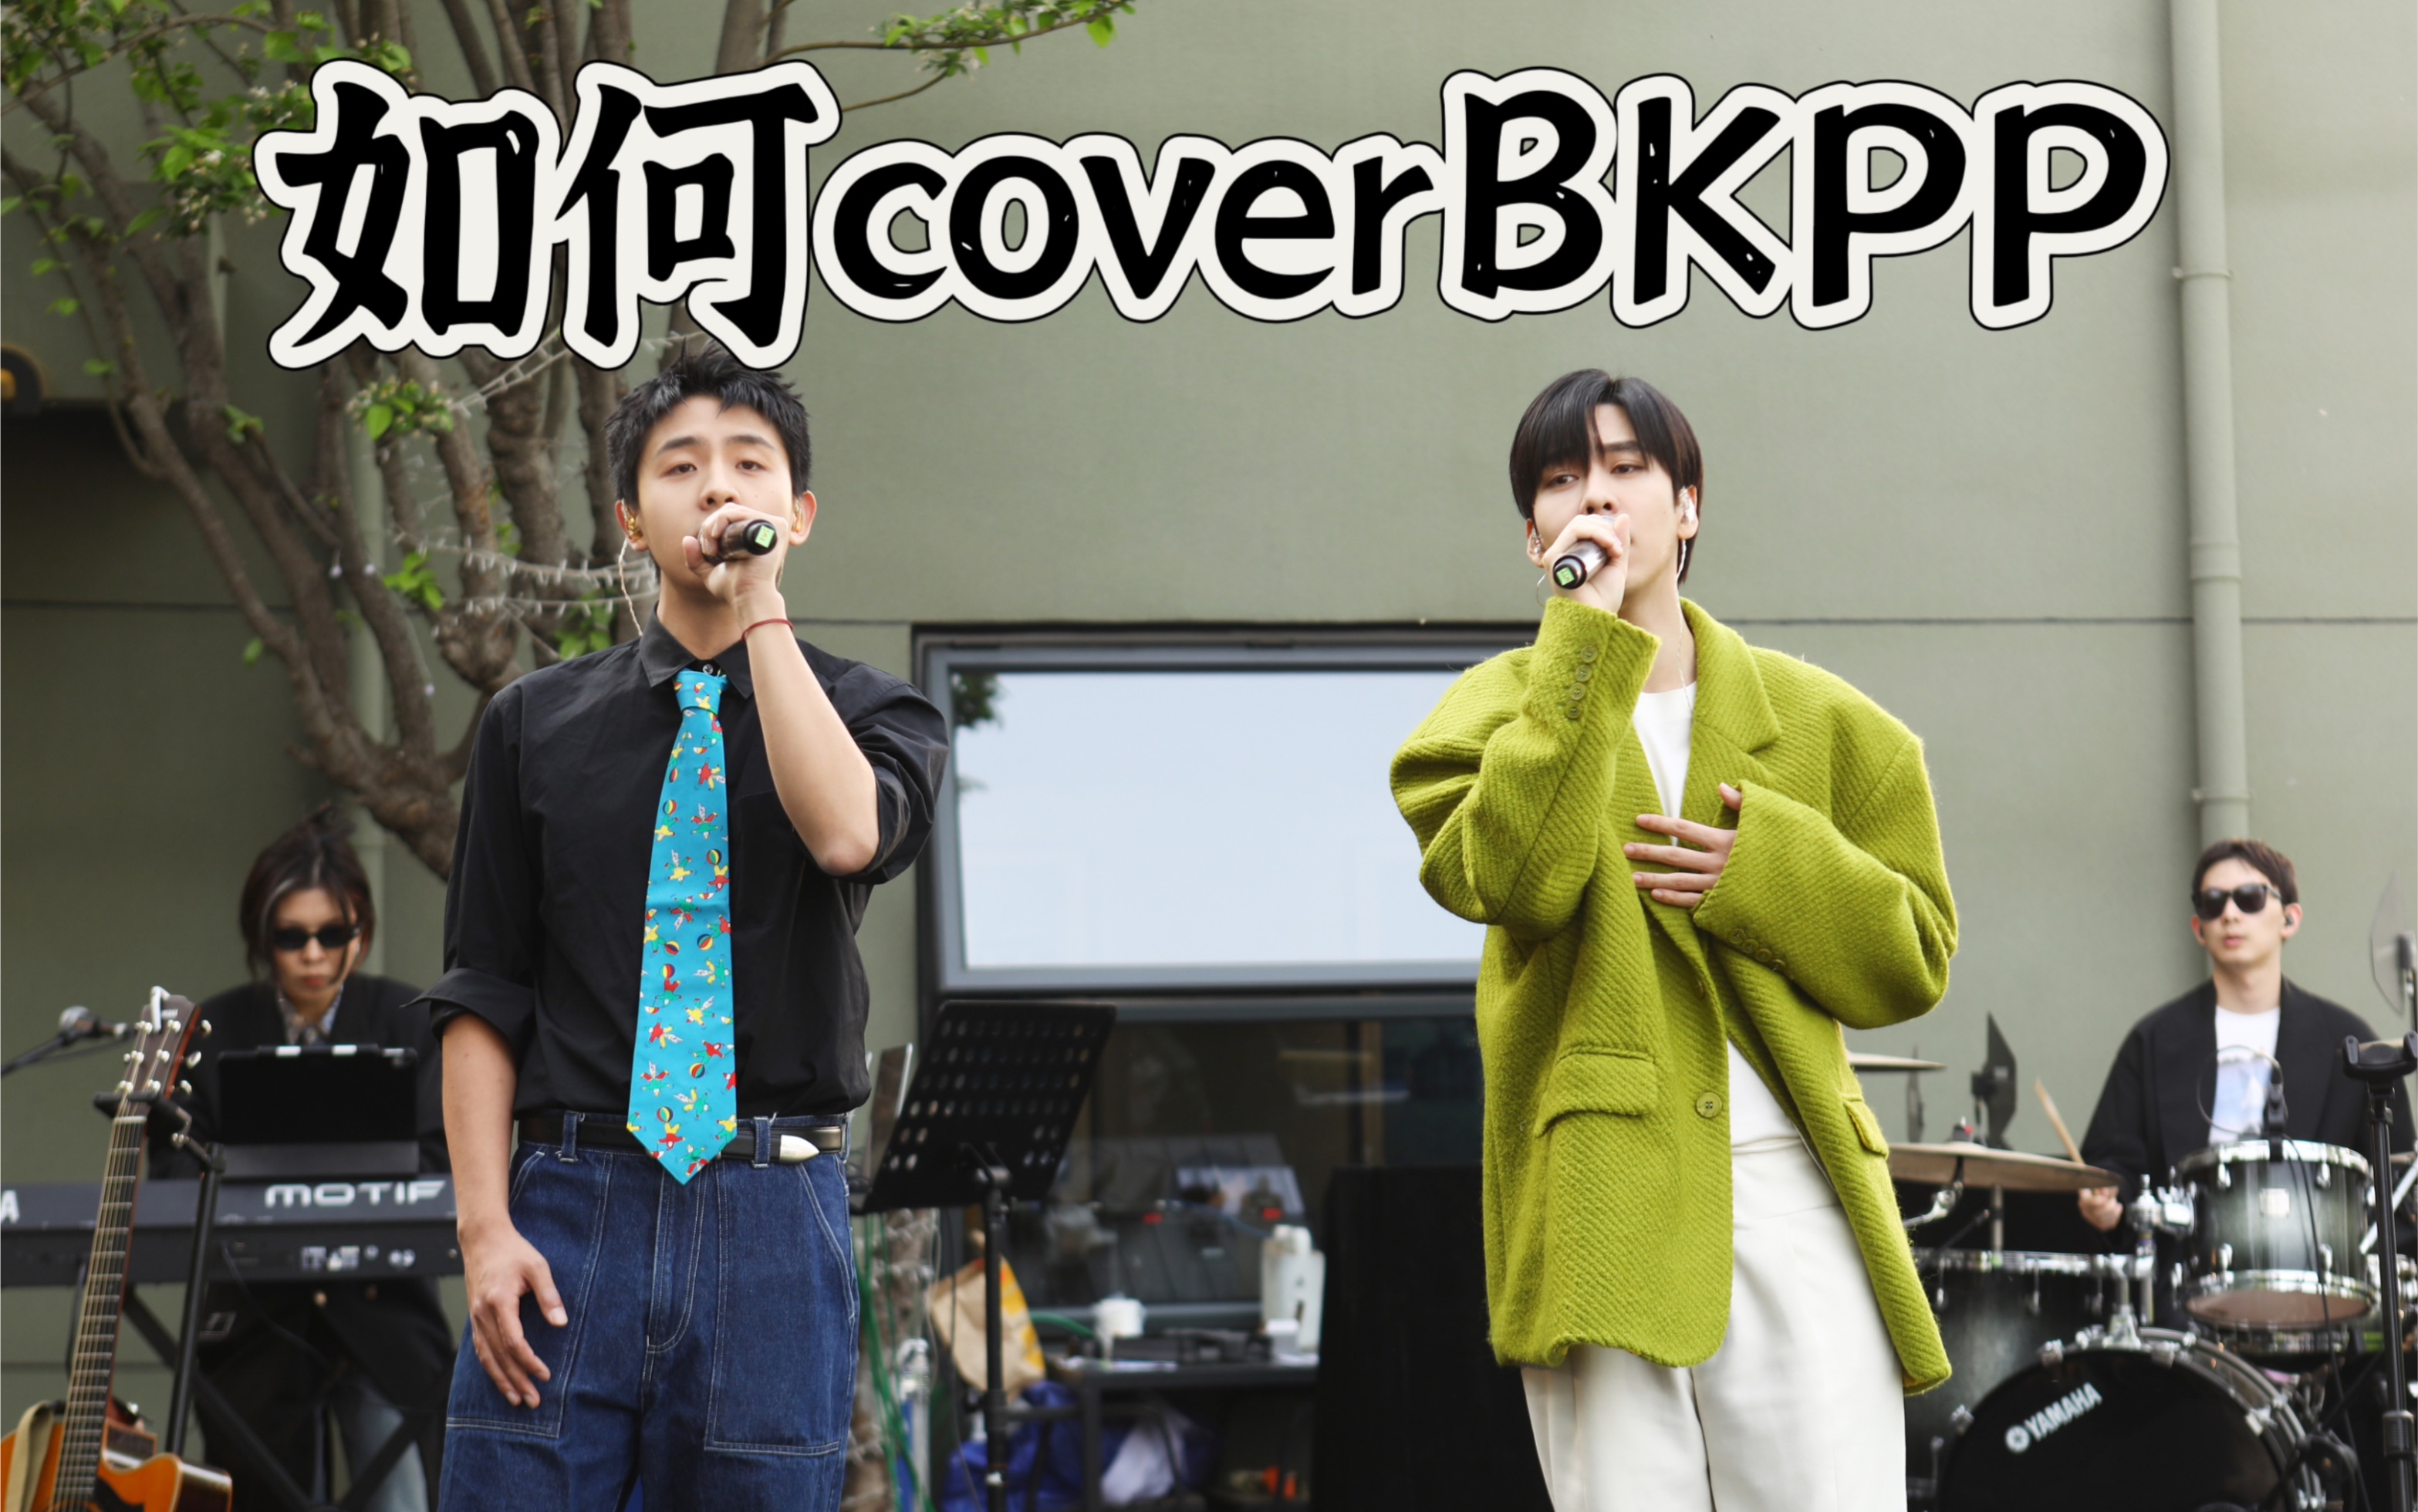 焦迈奇x王加一「如何」cover.BKPP